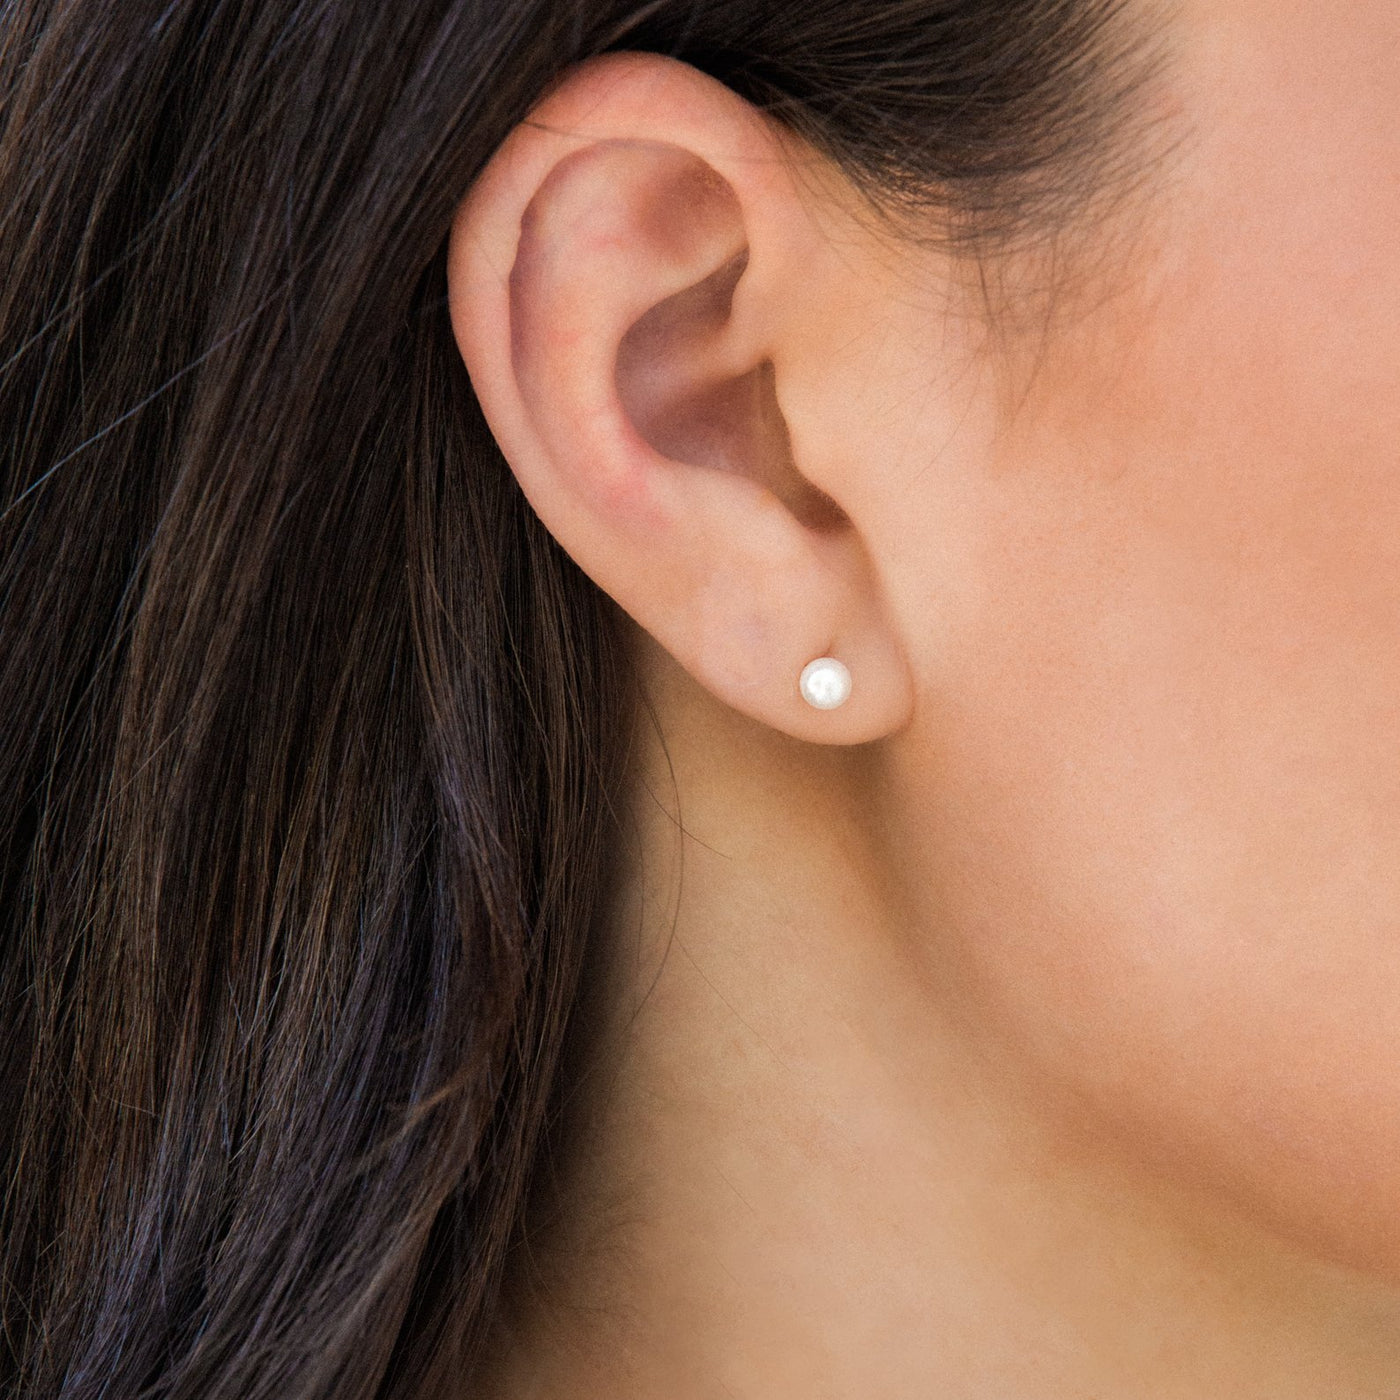 Pearl Stud Earrings by Simple & Dainty Jewelry